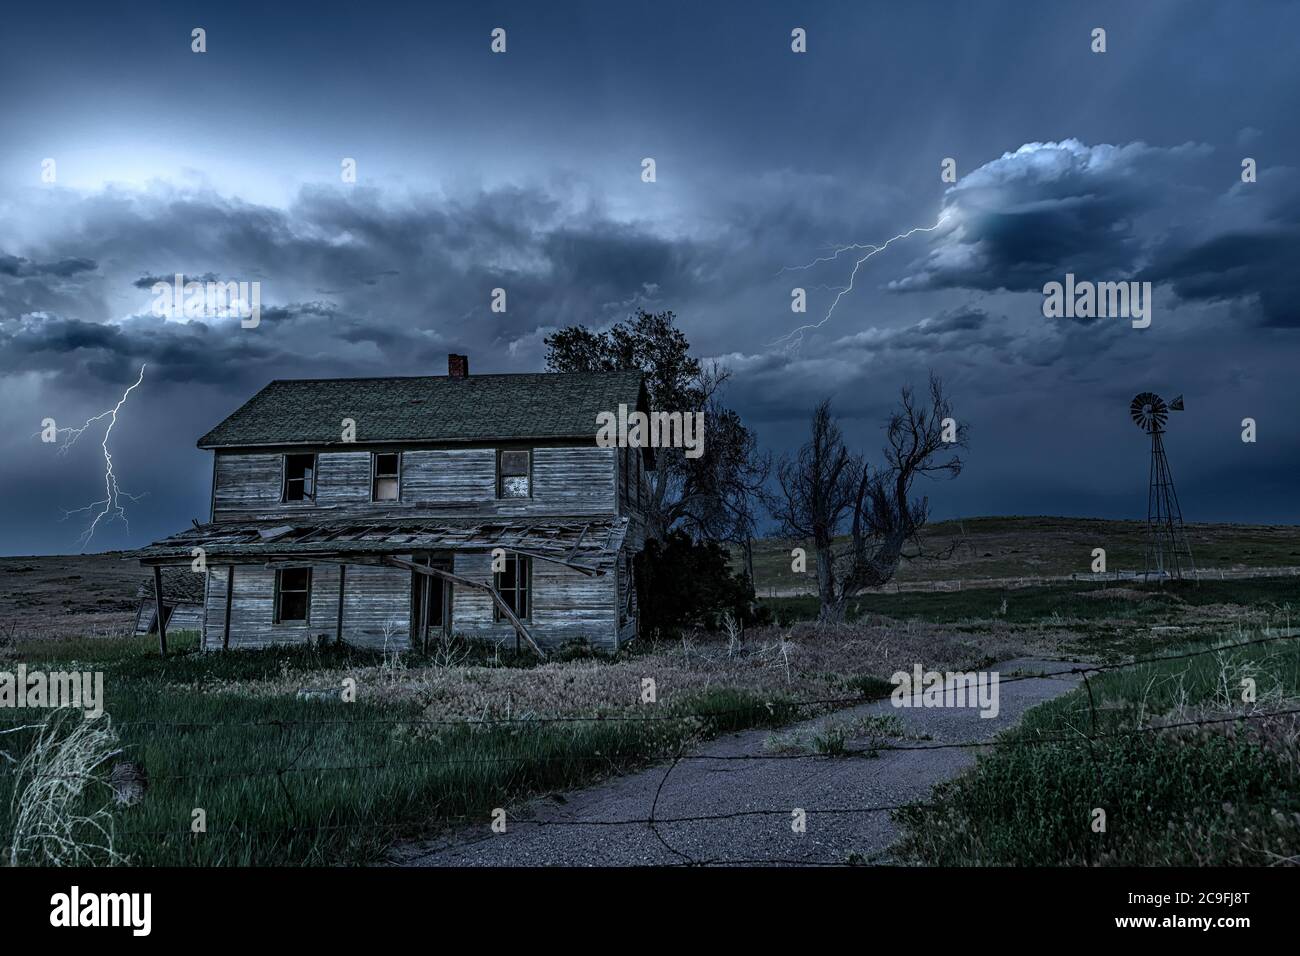 Eine lange Exposition eines alten, verfallenen Spukhauses im ländlichen Mittleren Westen bei Nacht, eingerahmt von unheimlichem dunklen Himmel und Blitz. Stockfoto